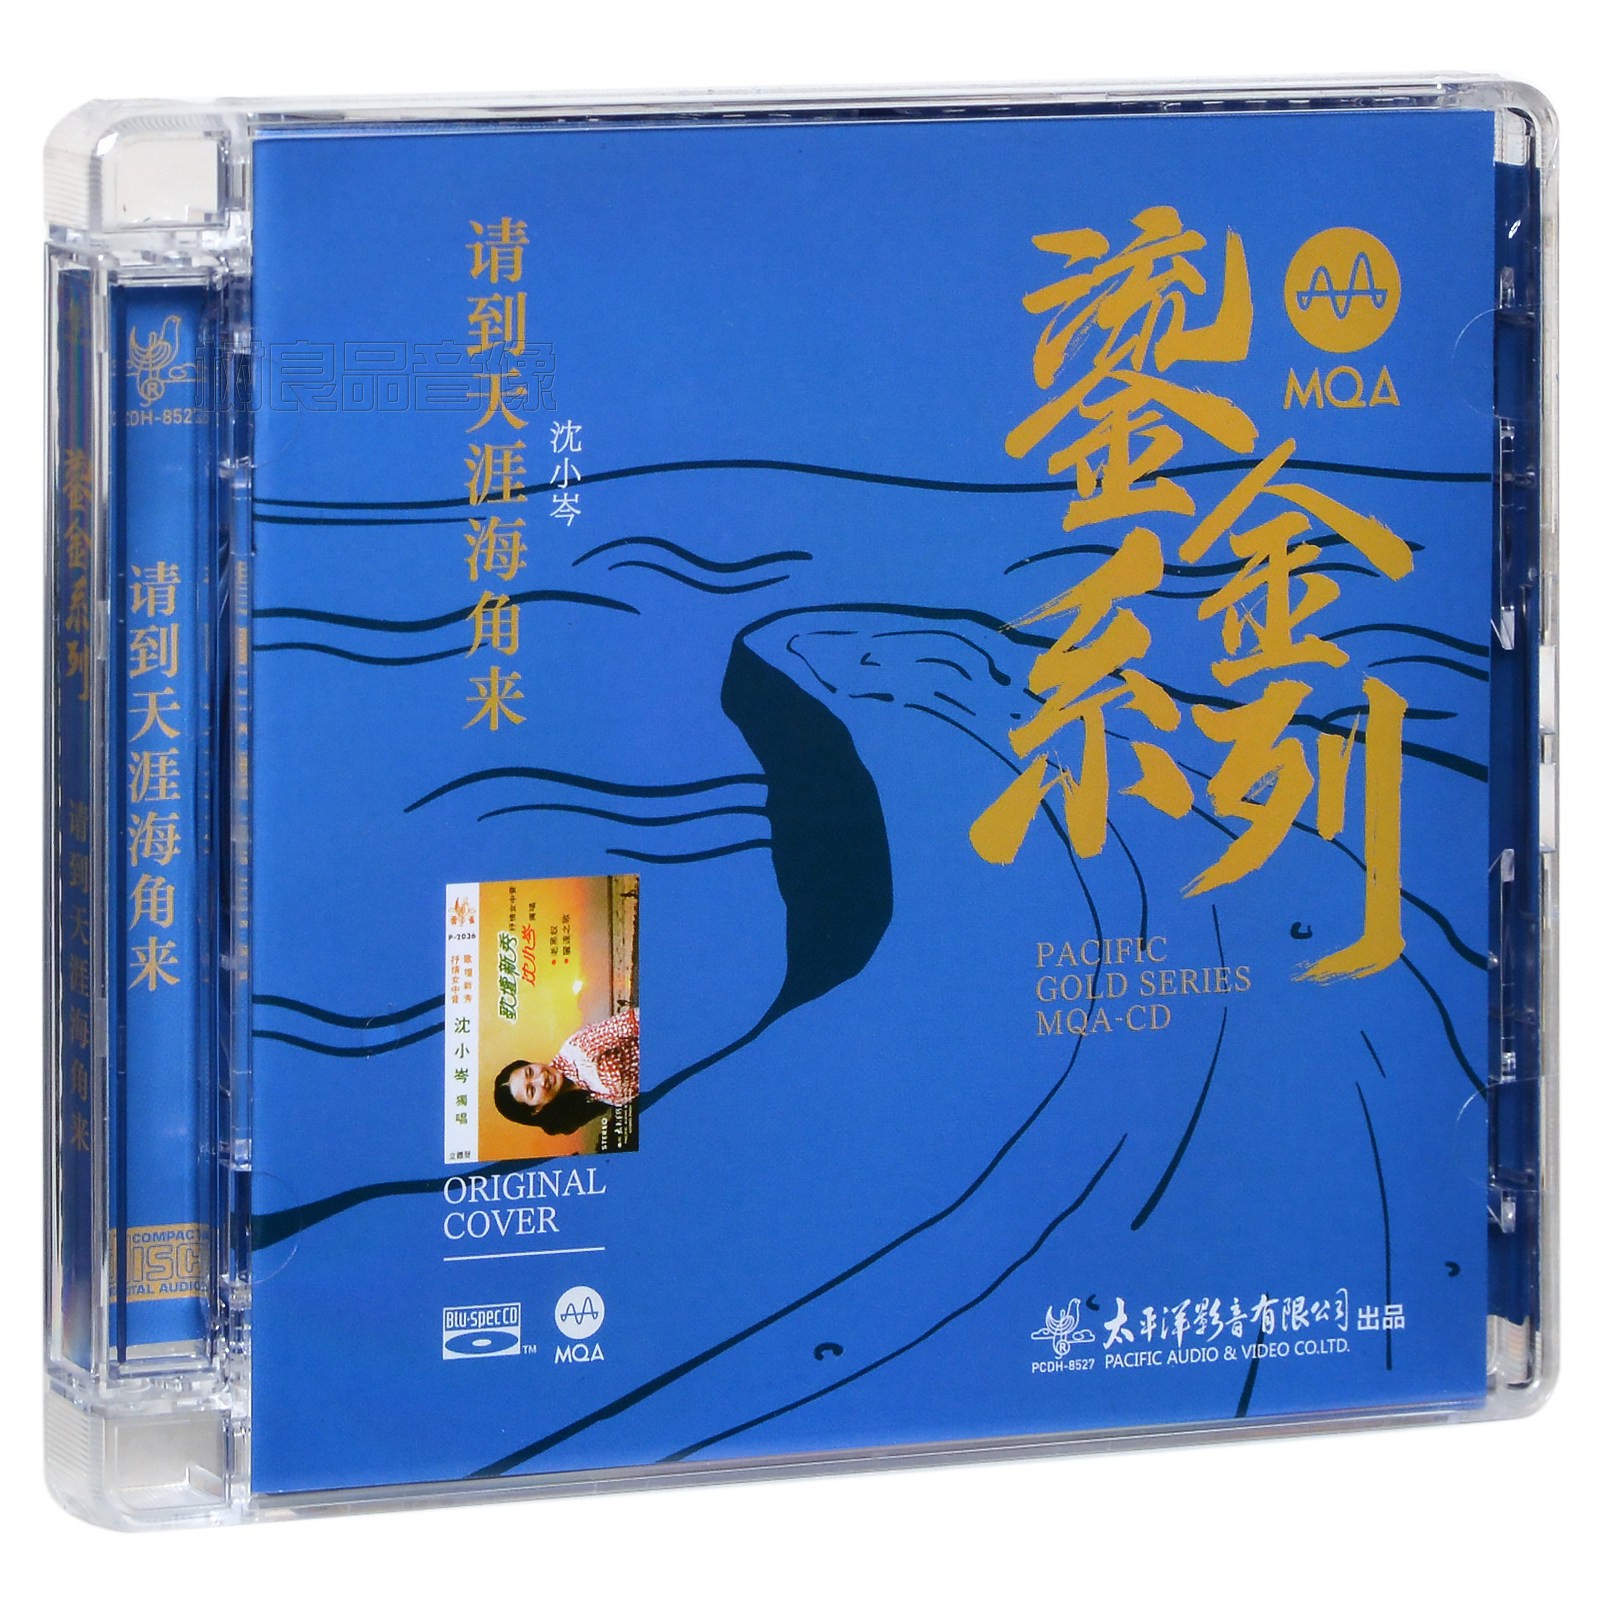 正版太平洋唱片 鎏金系列 沈小岑请到天涯海角来蓝光BSCD MQA CD